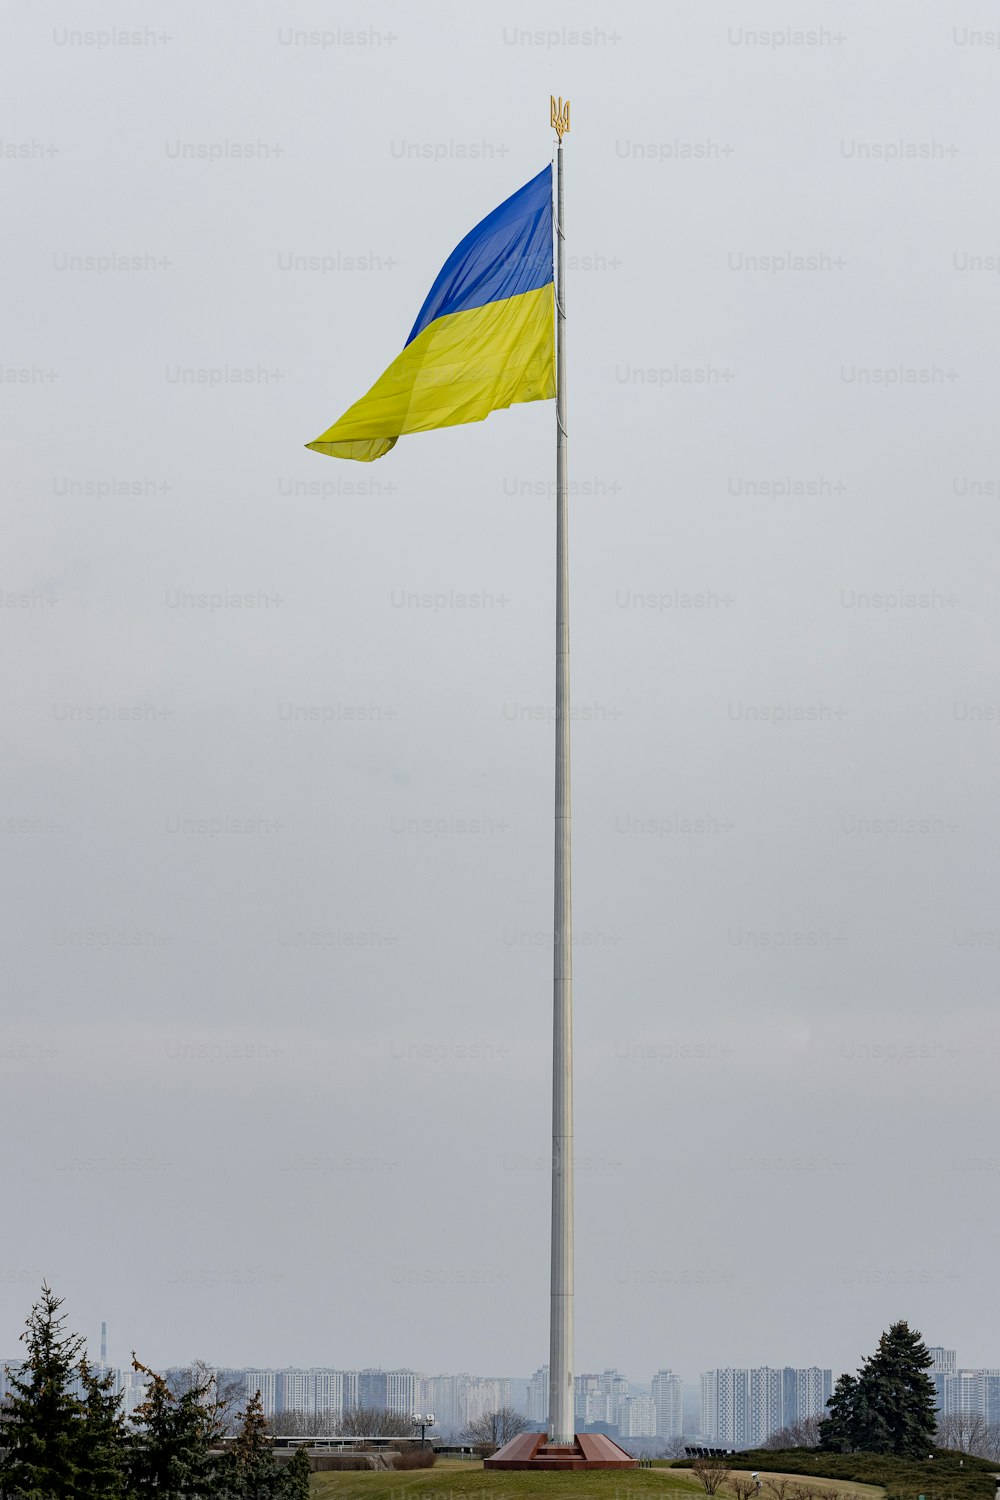 背の高いポール�の上にある青と黄色の旗